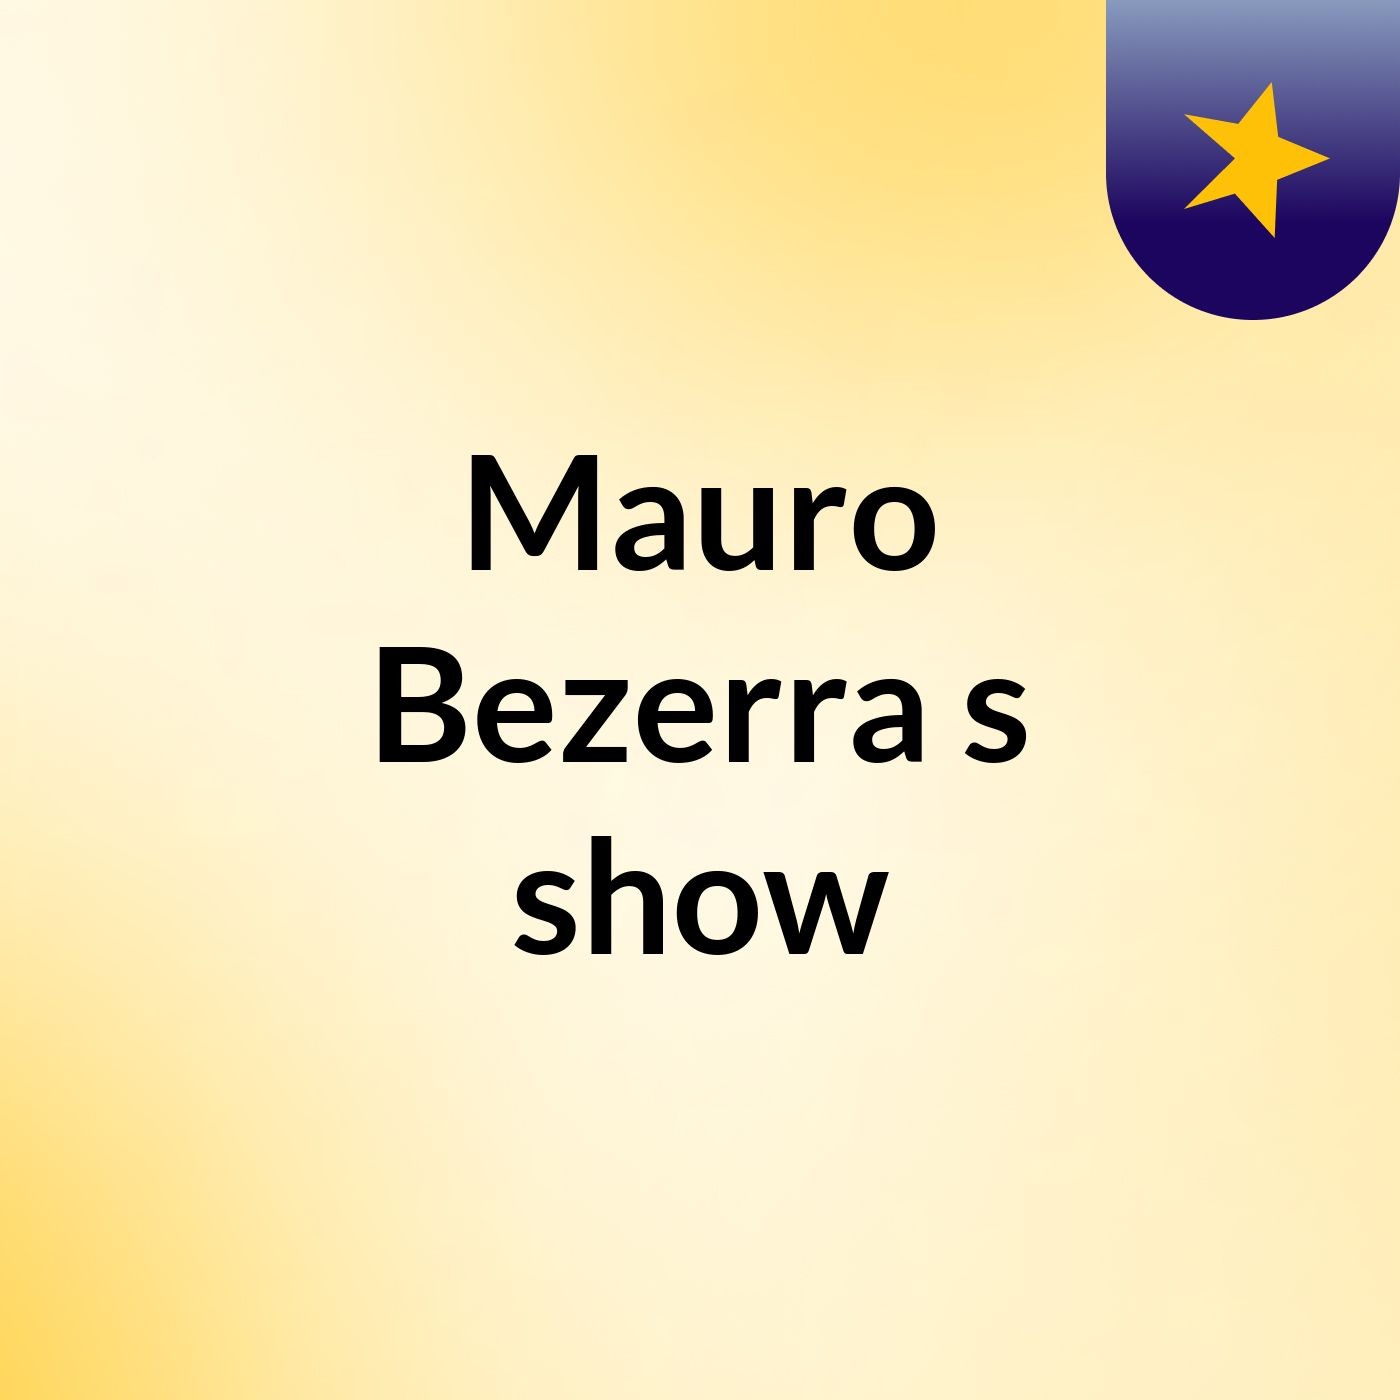 Mauro Bezerra's show